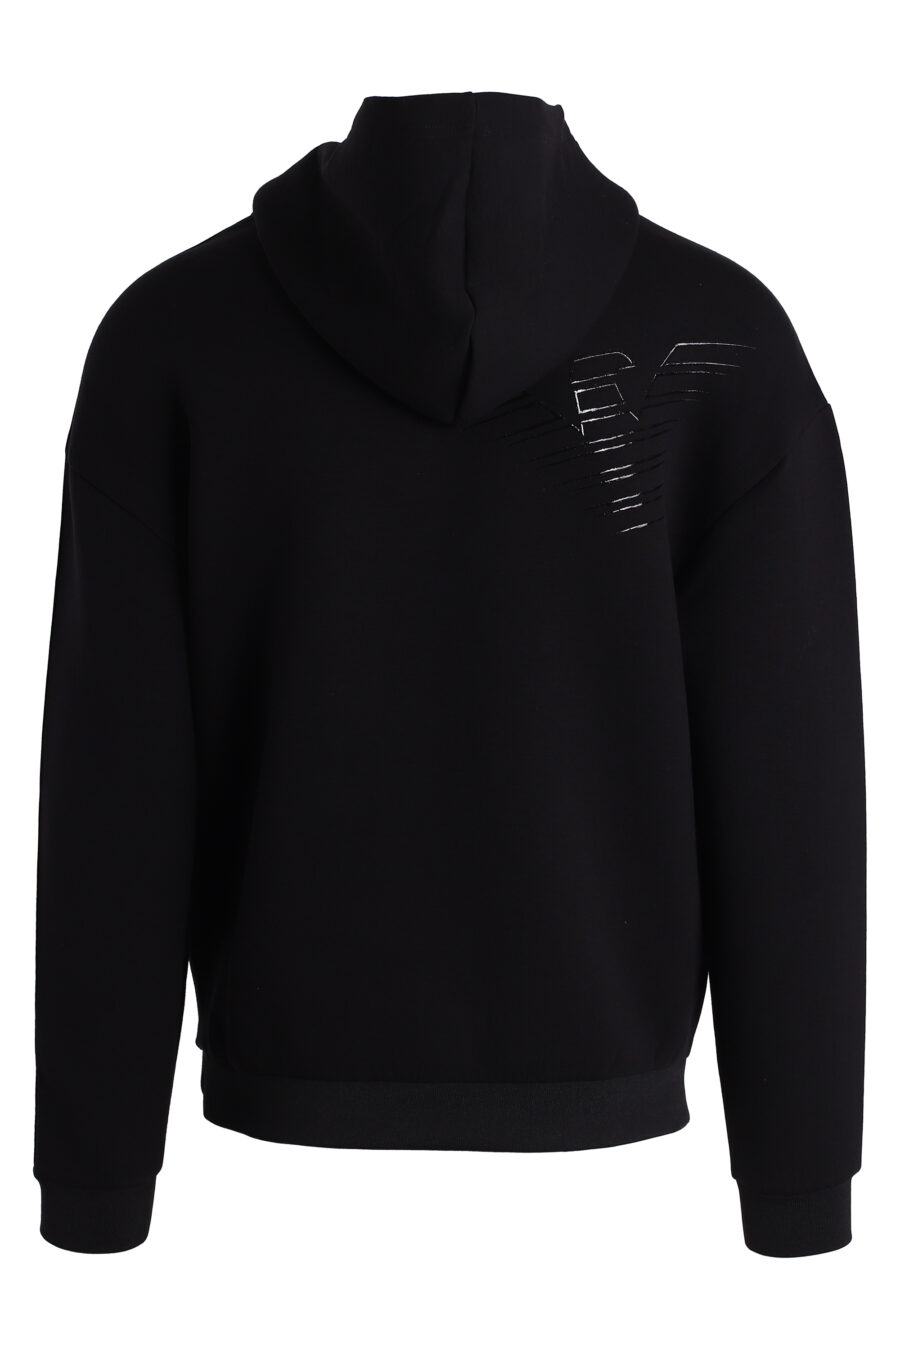 Sudadera negra con capucha y logo monocromático brillante en mangas - IMG 4750